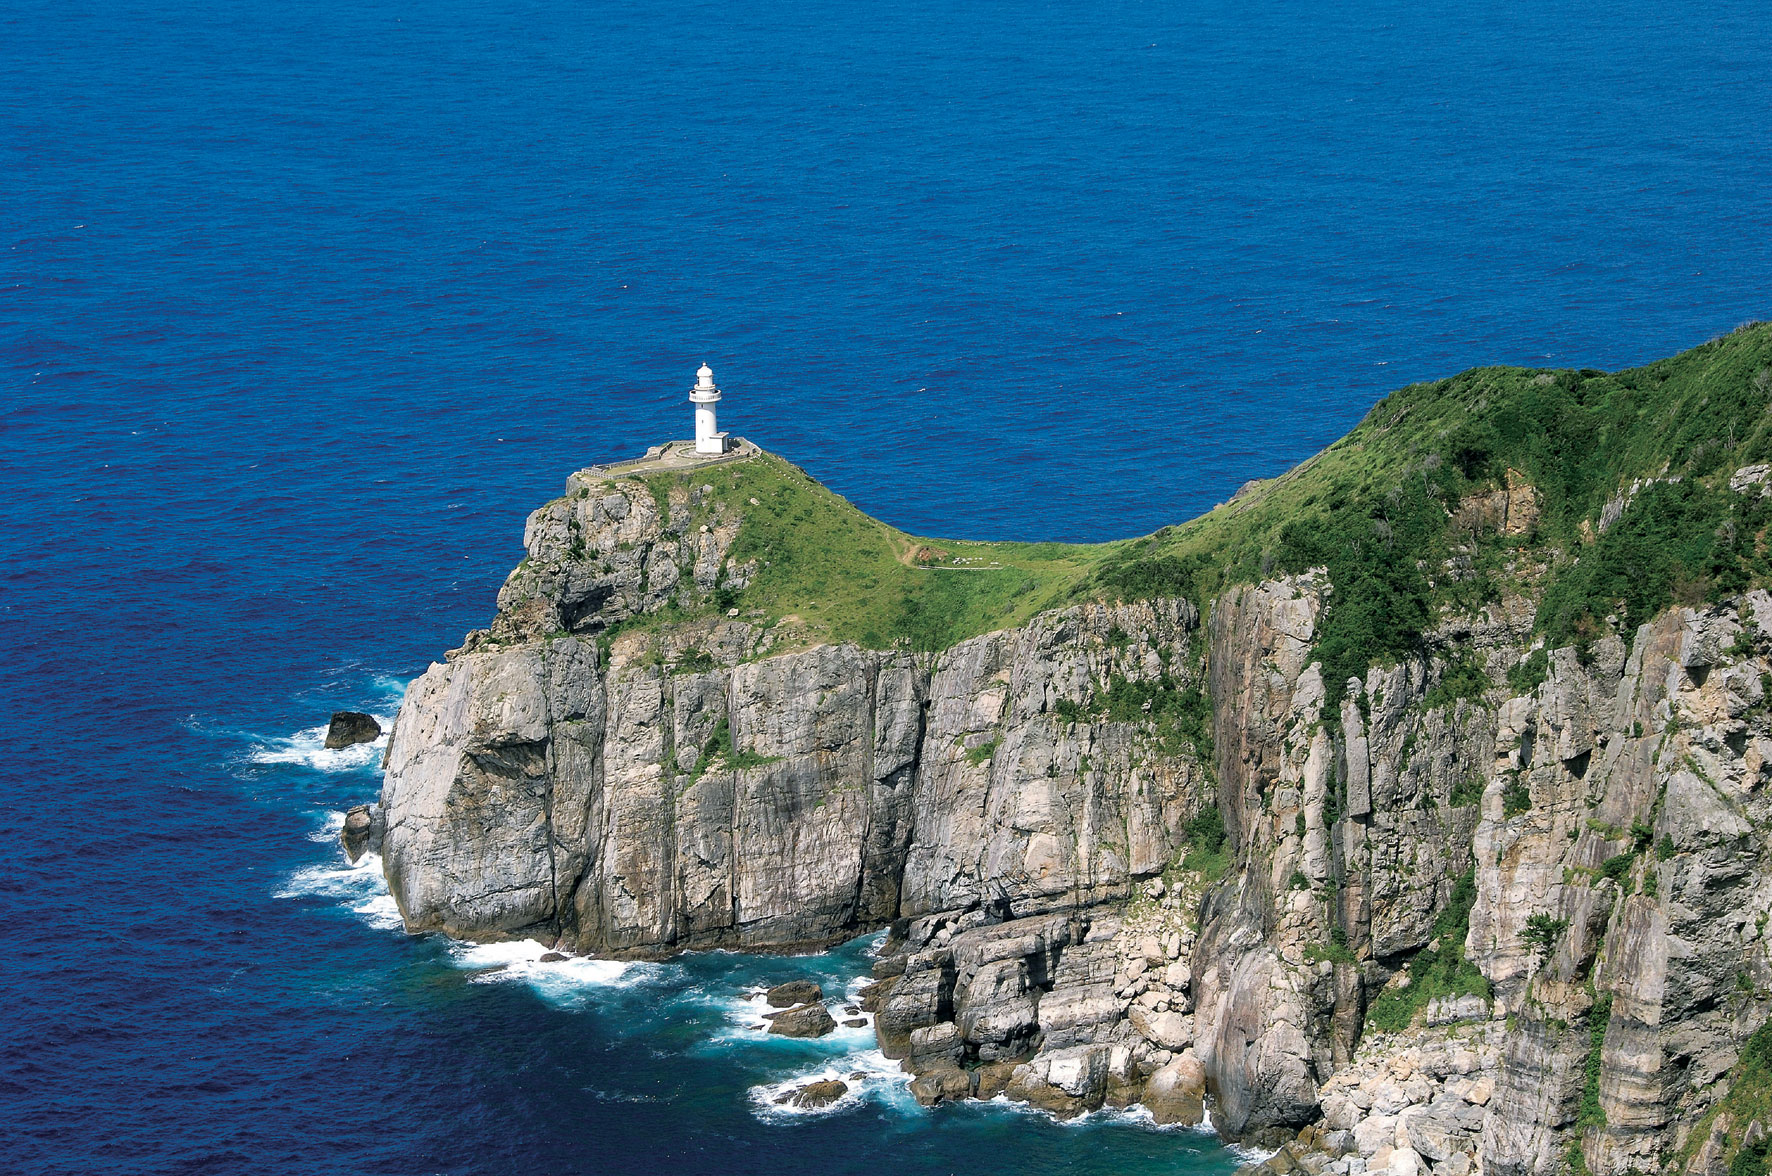 断崖絶壁にたたずむ白亜の灯台「大瀬崎灯台」